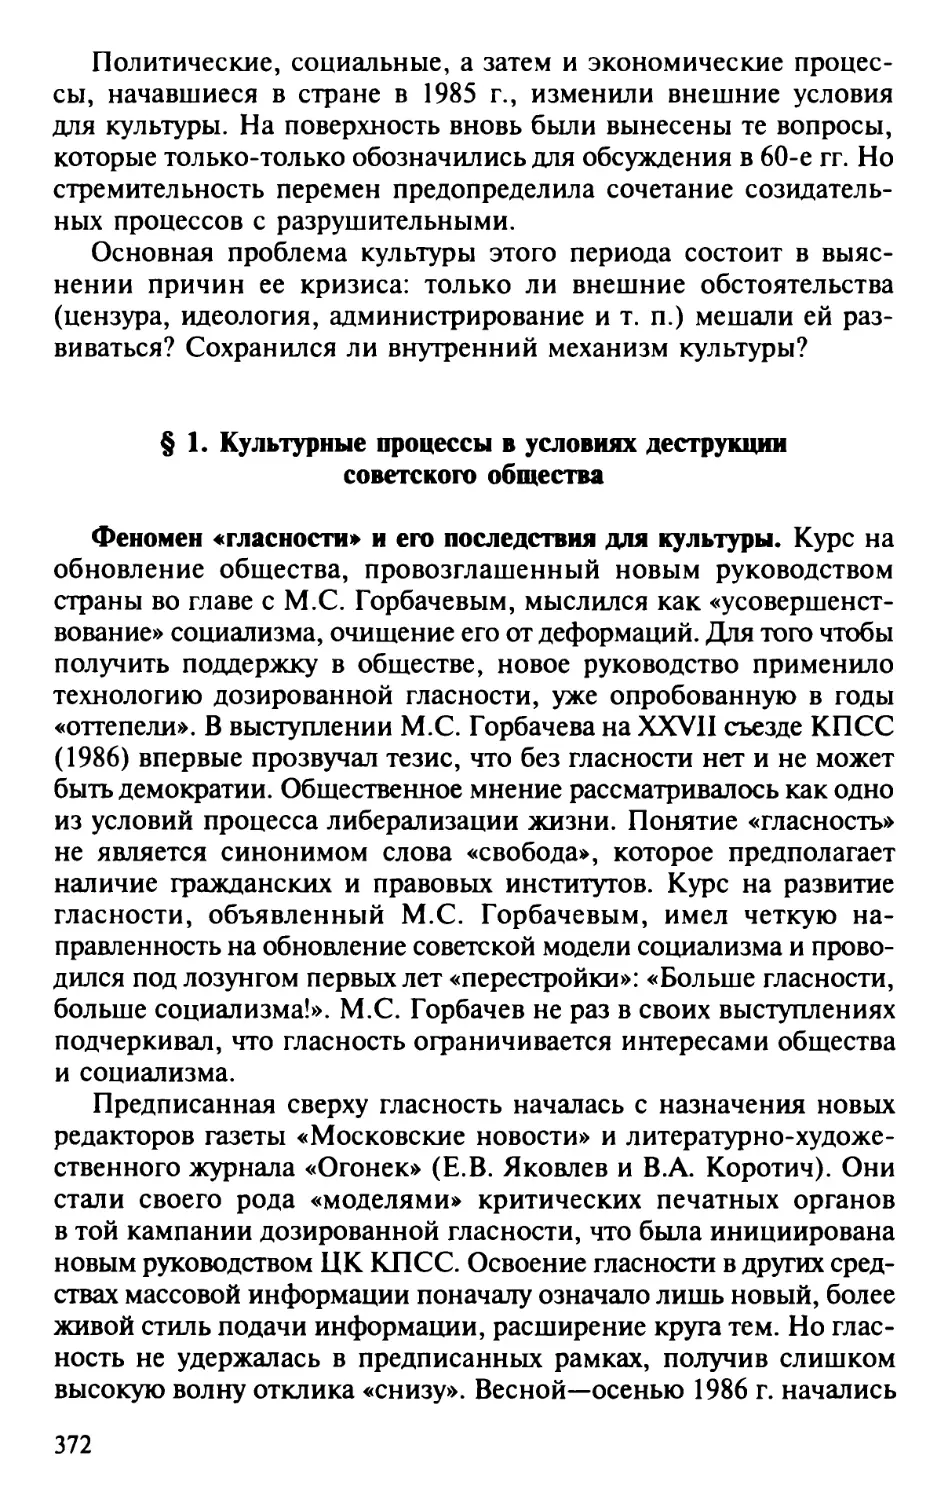 § 1. Культурные процессы в условиях деструкции советского общества